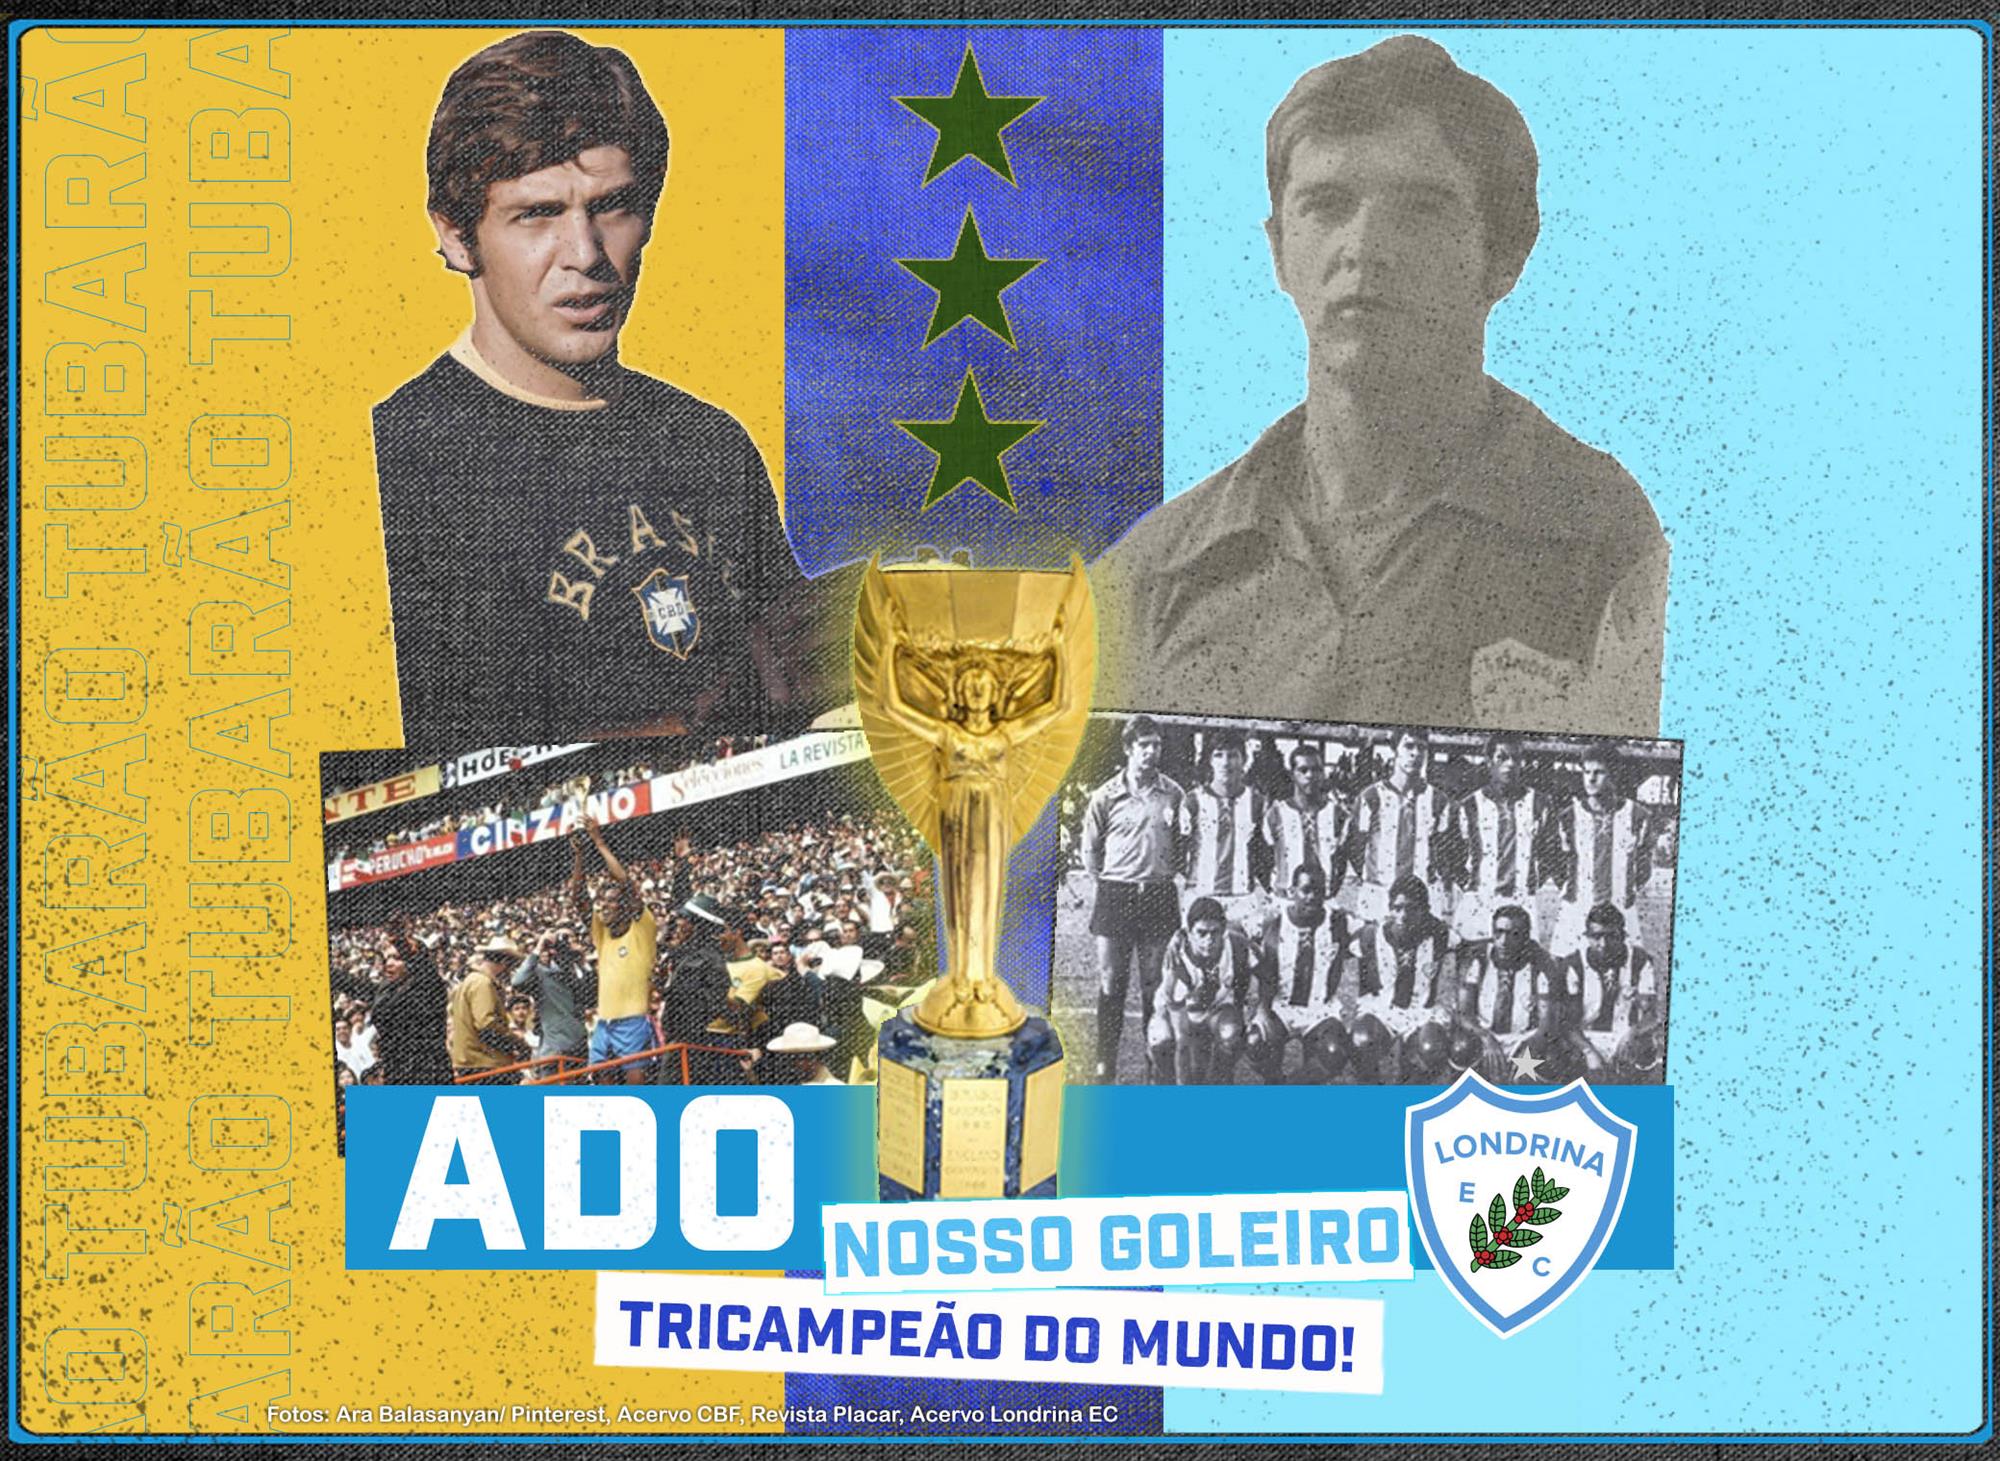 Do Londrina para o Tricampeonato Mundial com a Seleção Brasileira em 1970